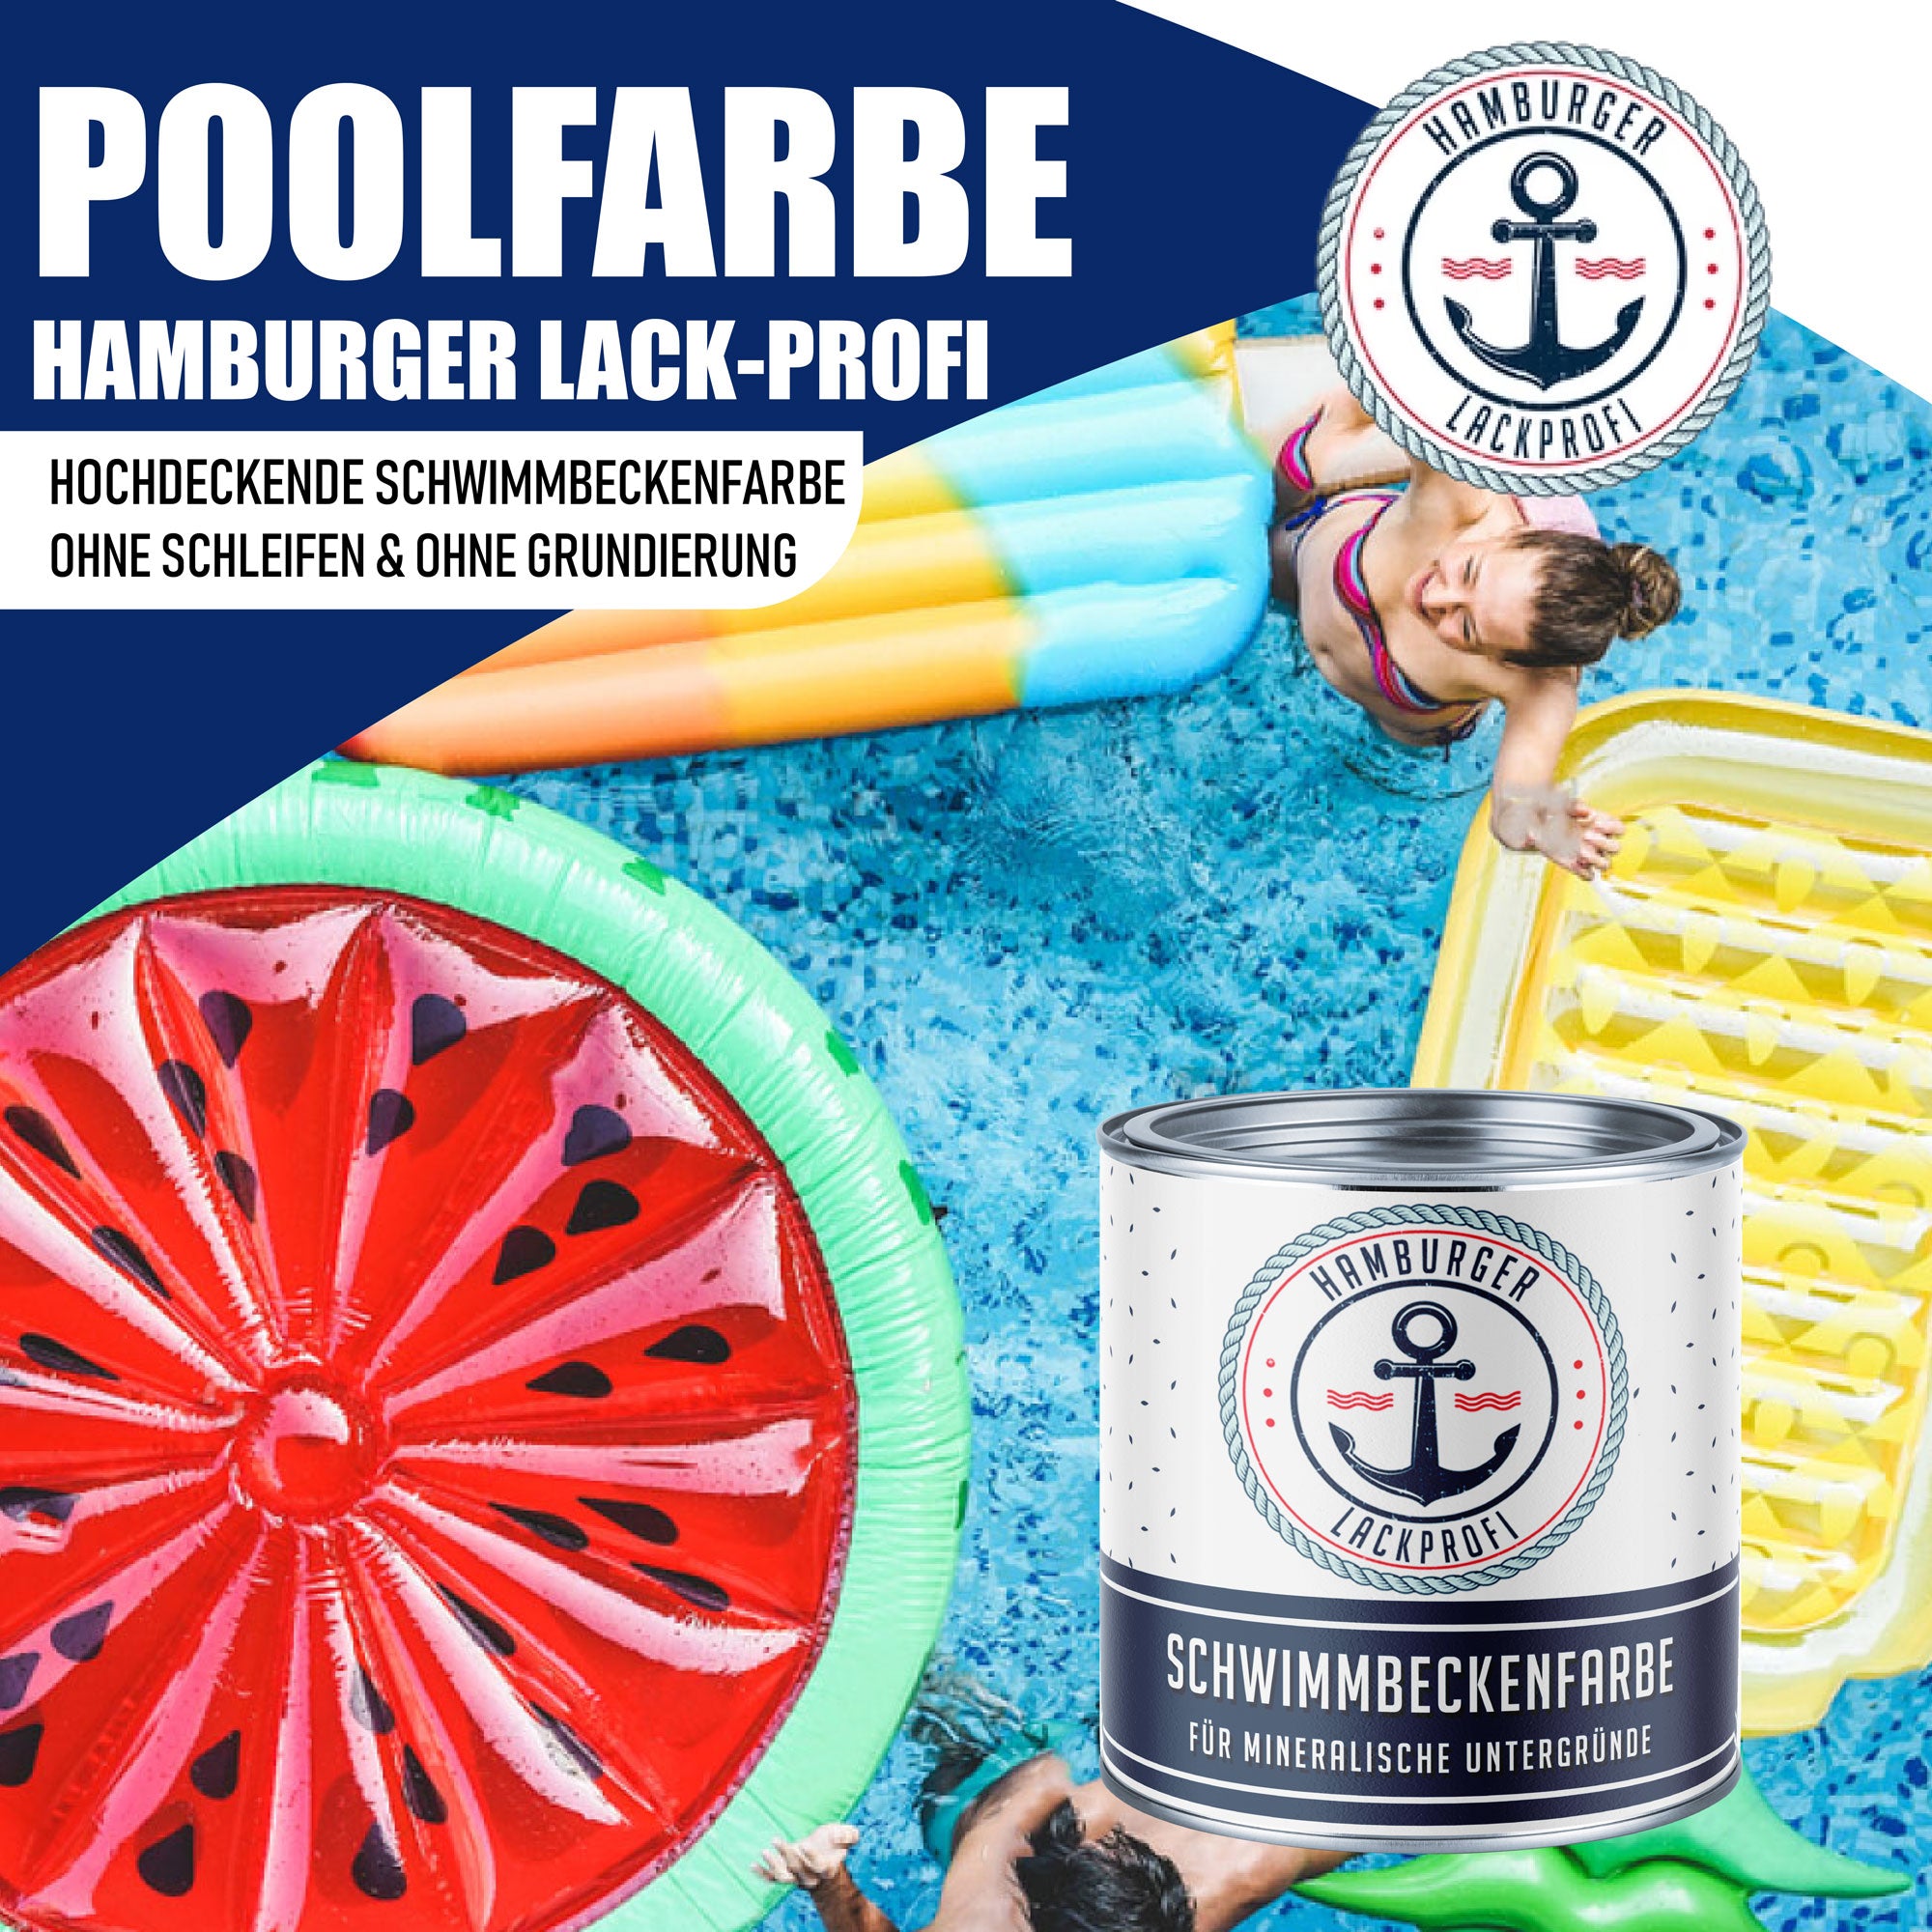 Hamburger Lack-Profi Schwimmbeckenfarbe Reinorange RAL 2004 - hochdeckende Poolfarbe